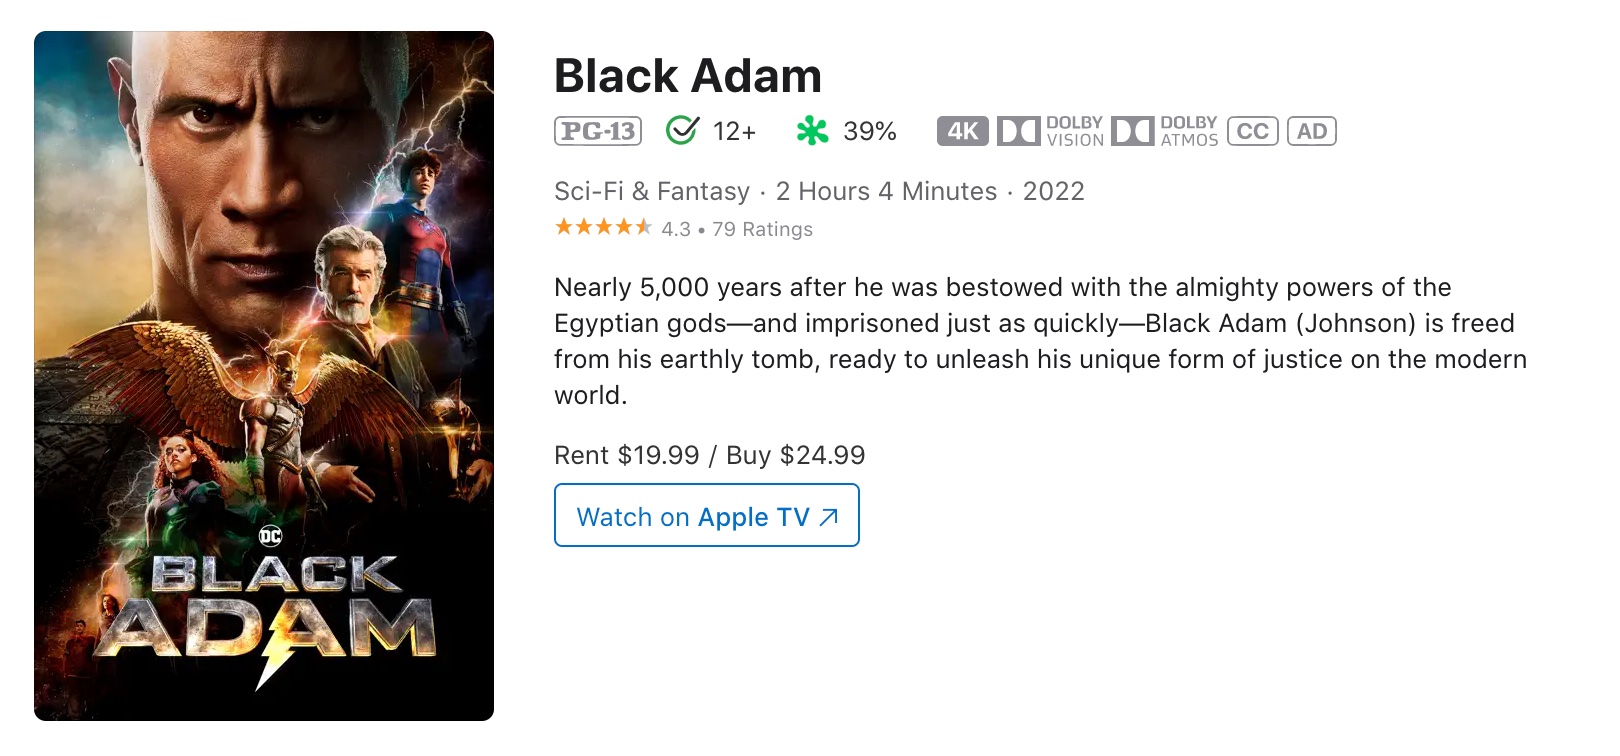 «Черный Адам» уже можно посмотреть онлайн в качестве - цифровой релиз состоялся неожиданно